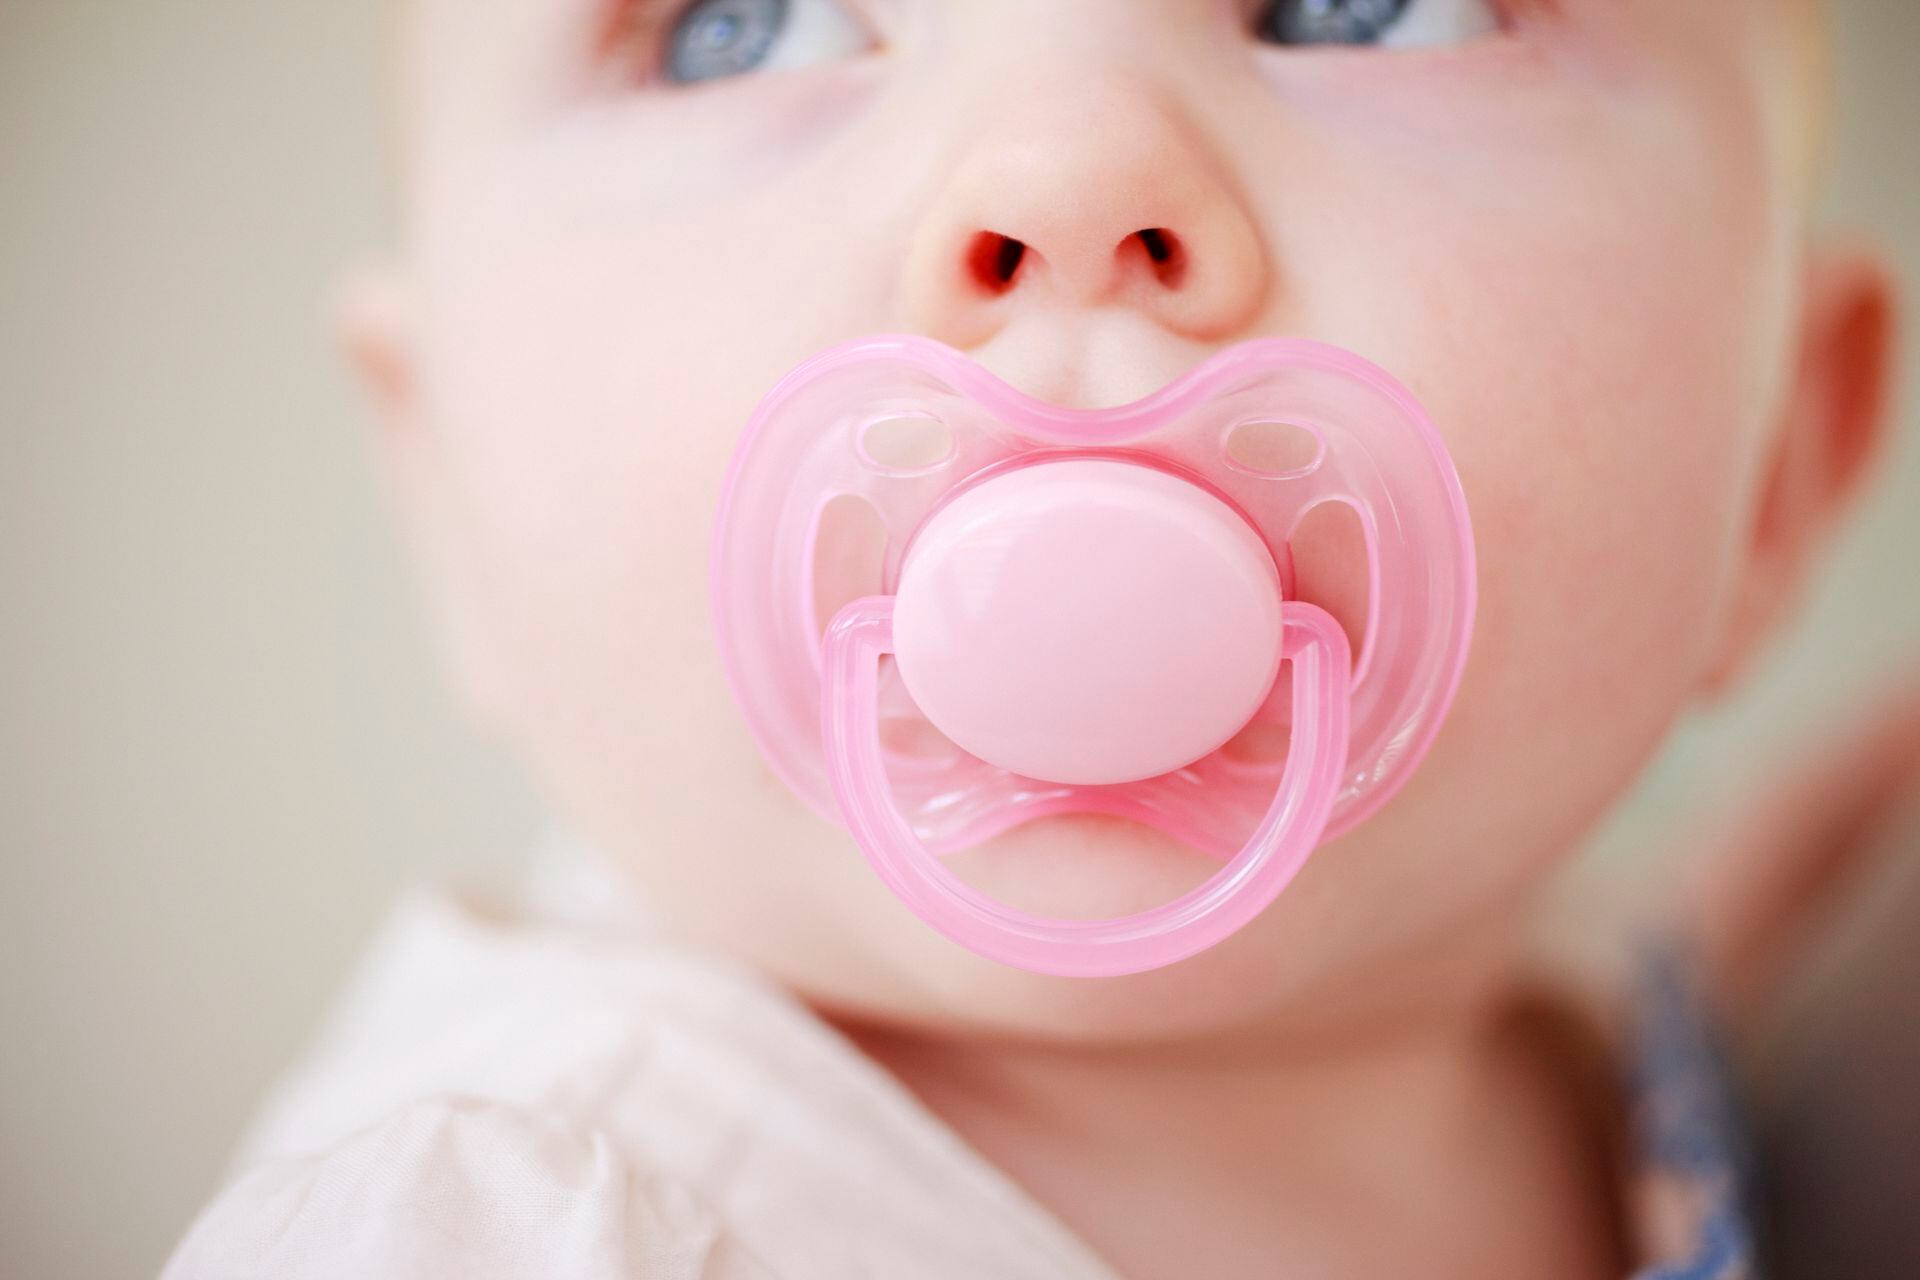 DT News - Spain - La lactancia materna fomenta la salud oral del bebé